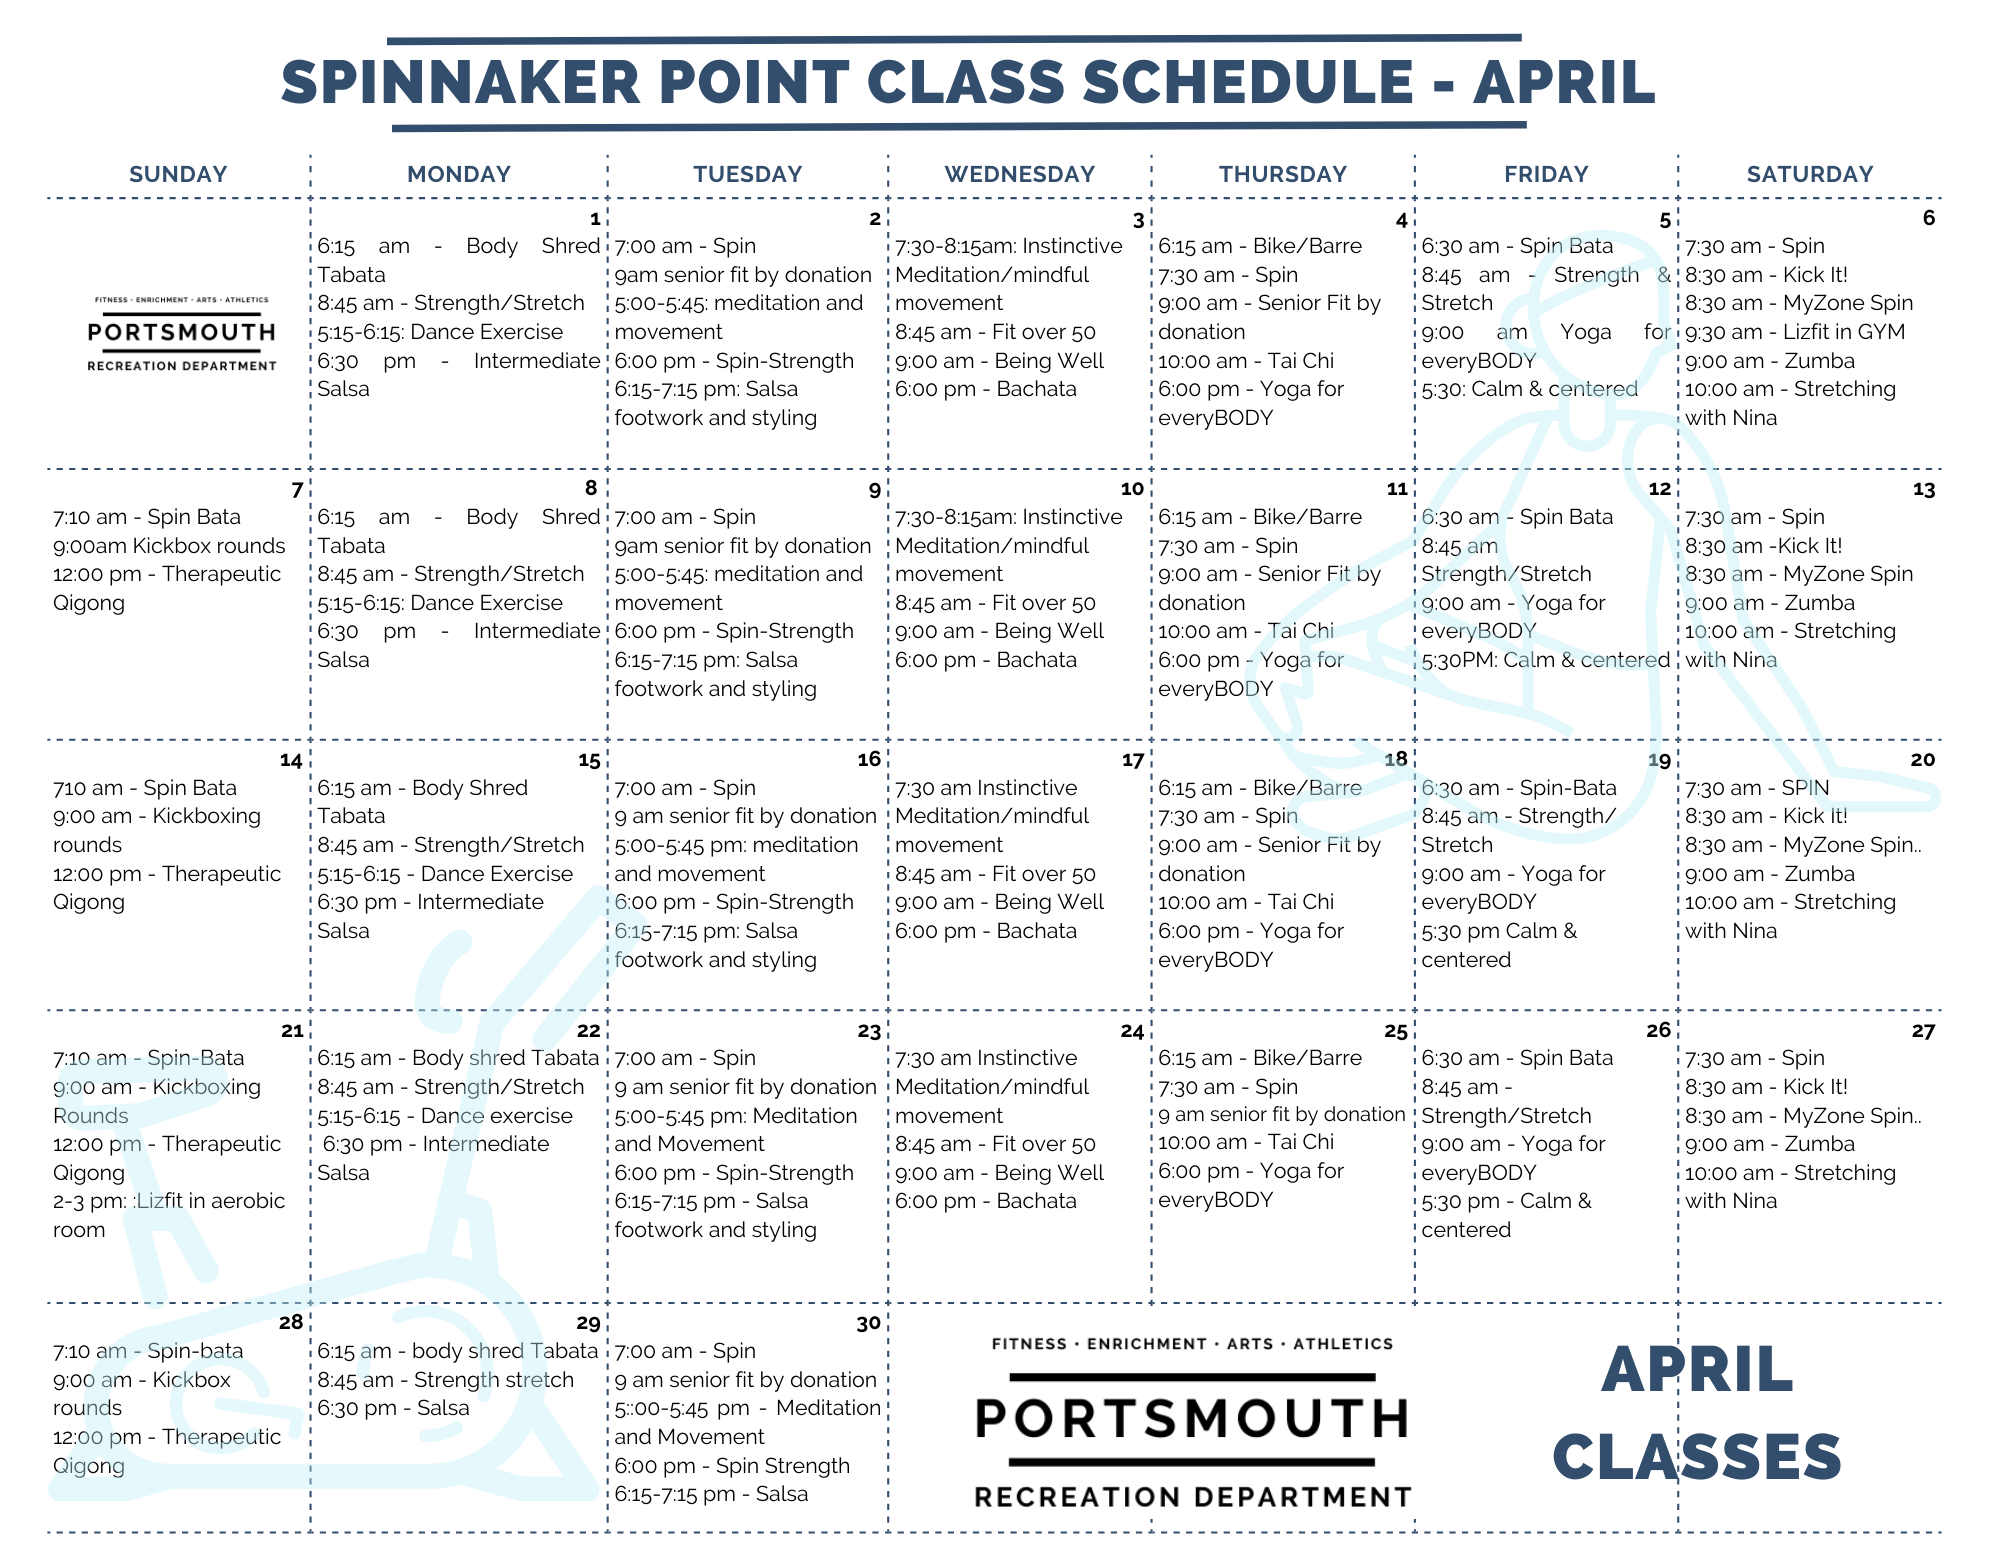 Spinnaker Point April schedule